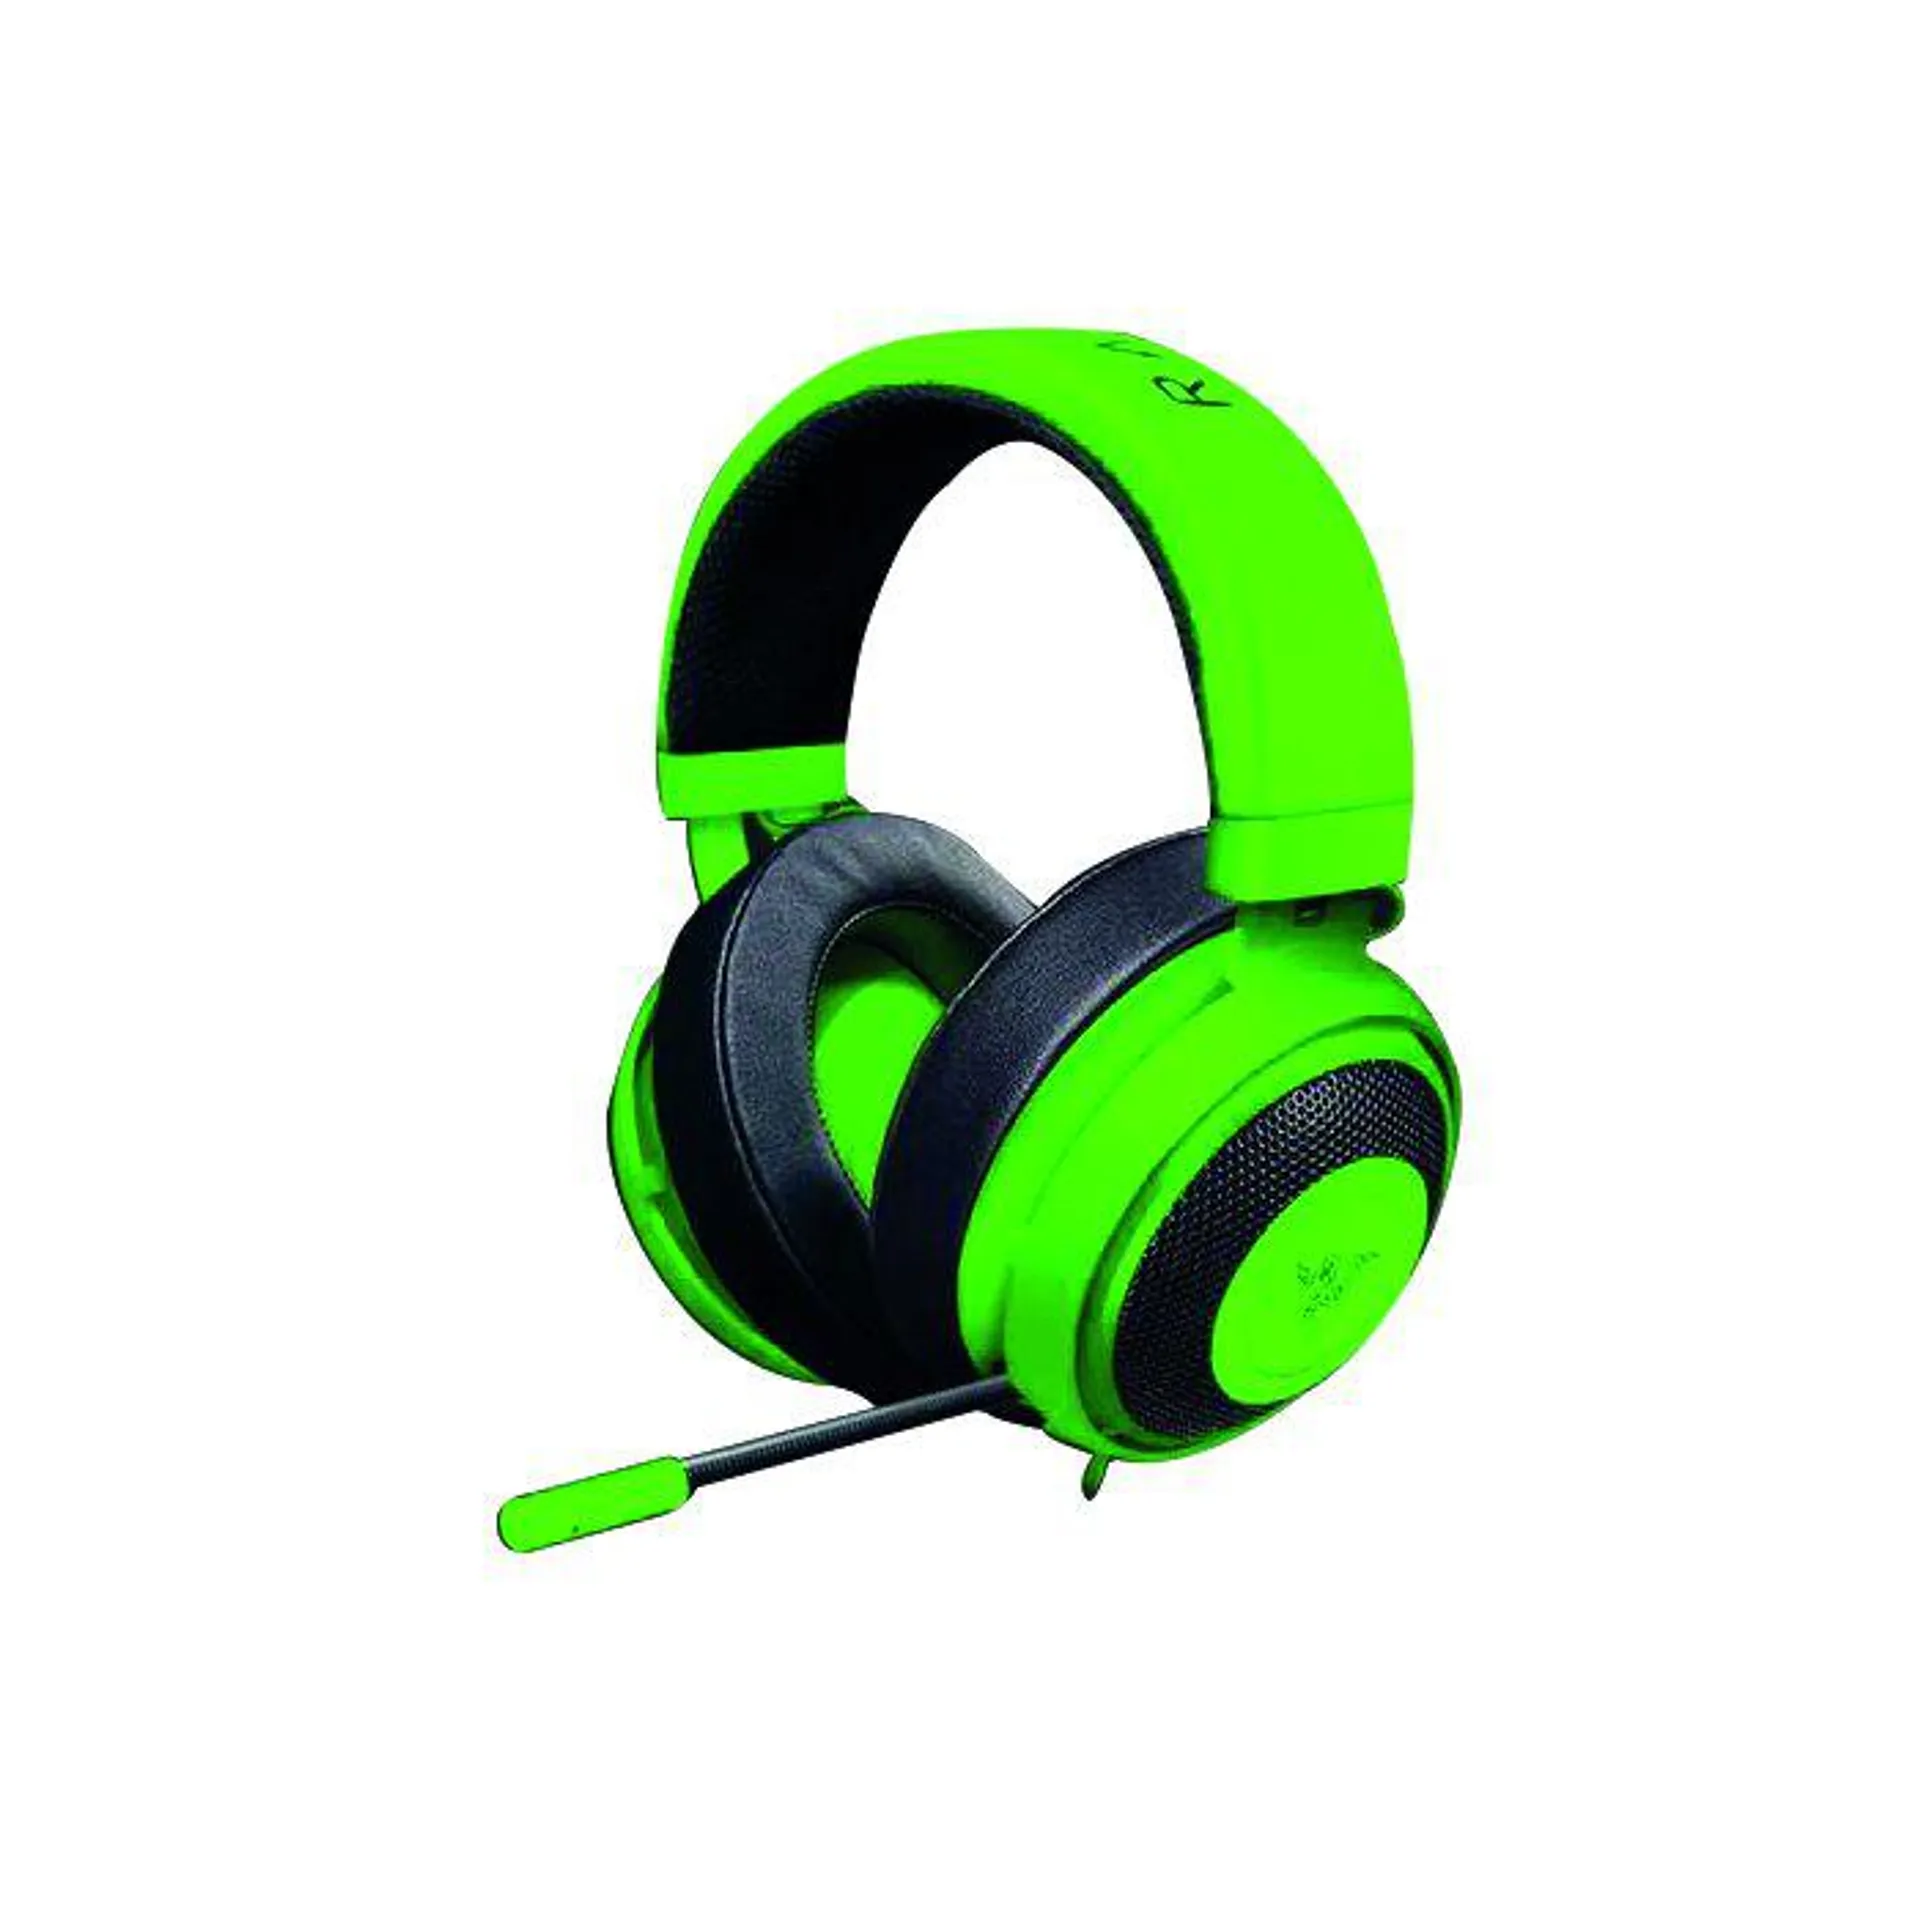 Razer Kraken Green Headset